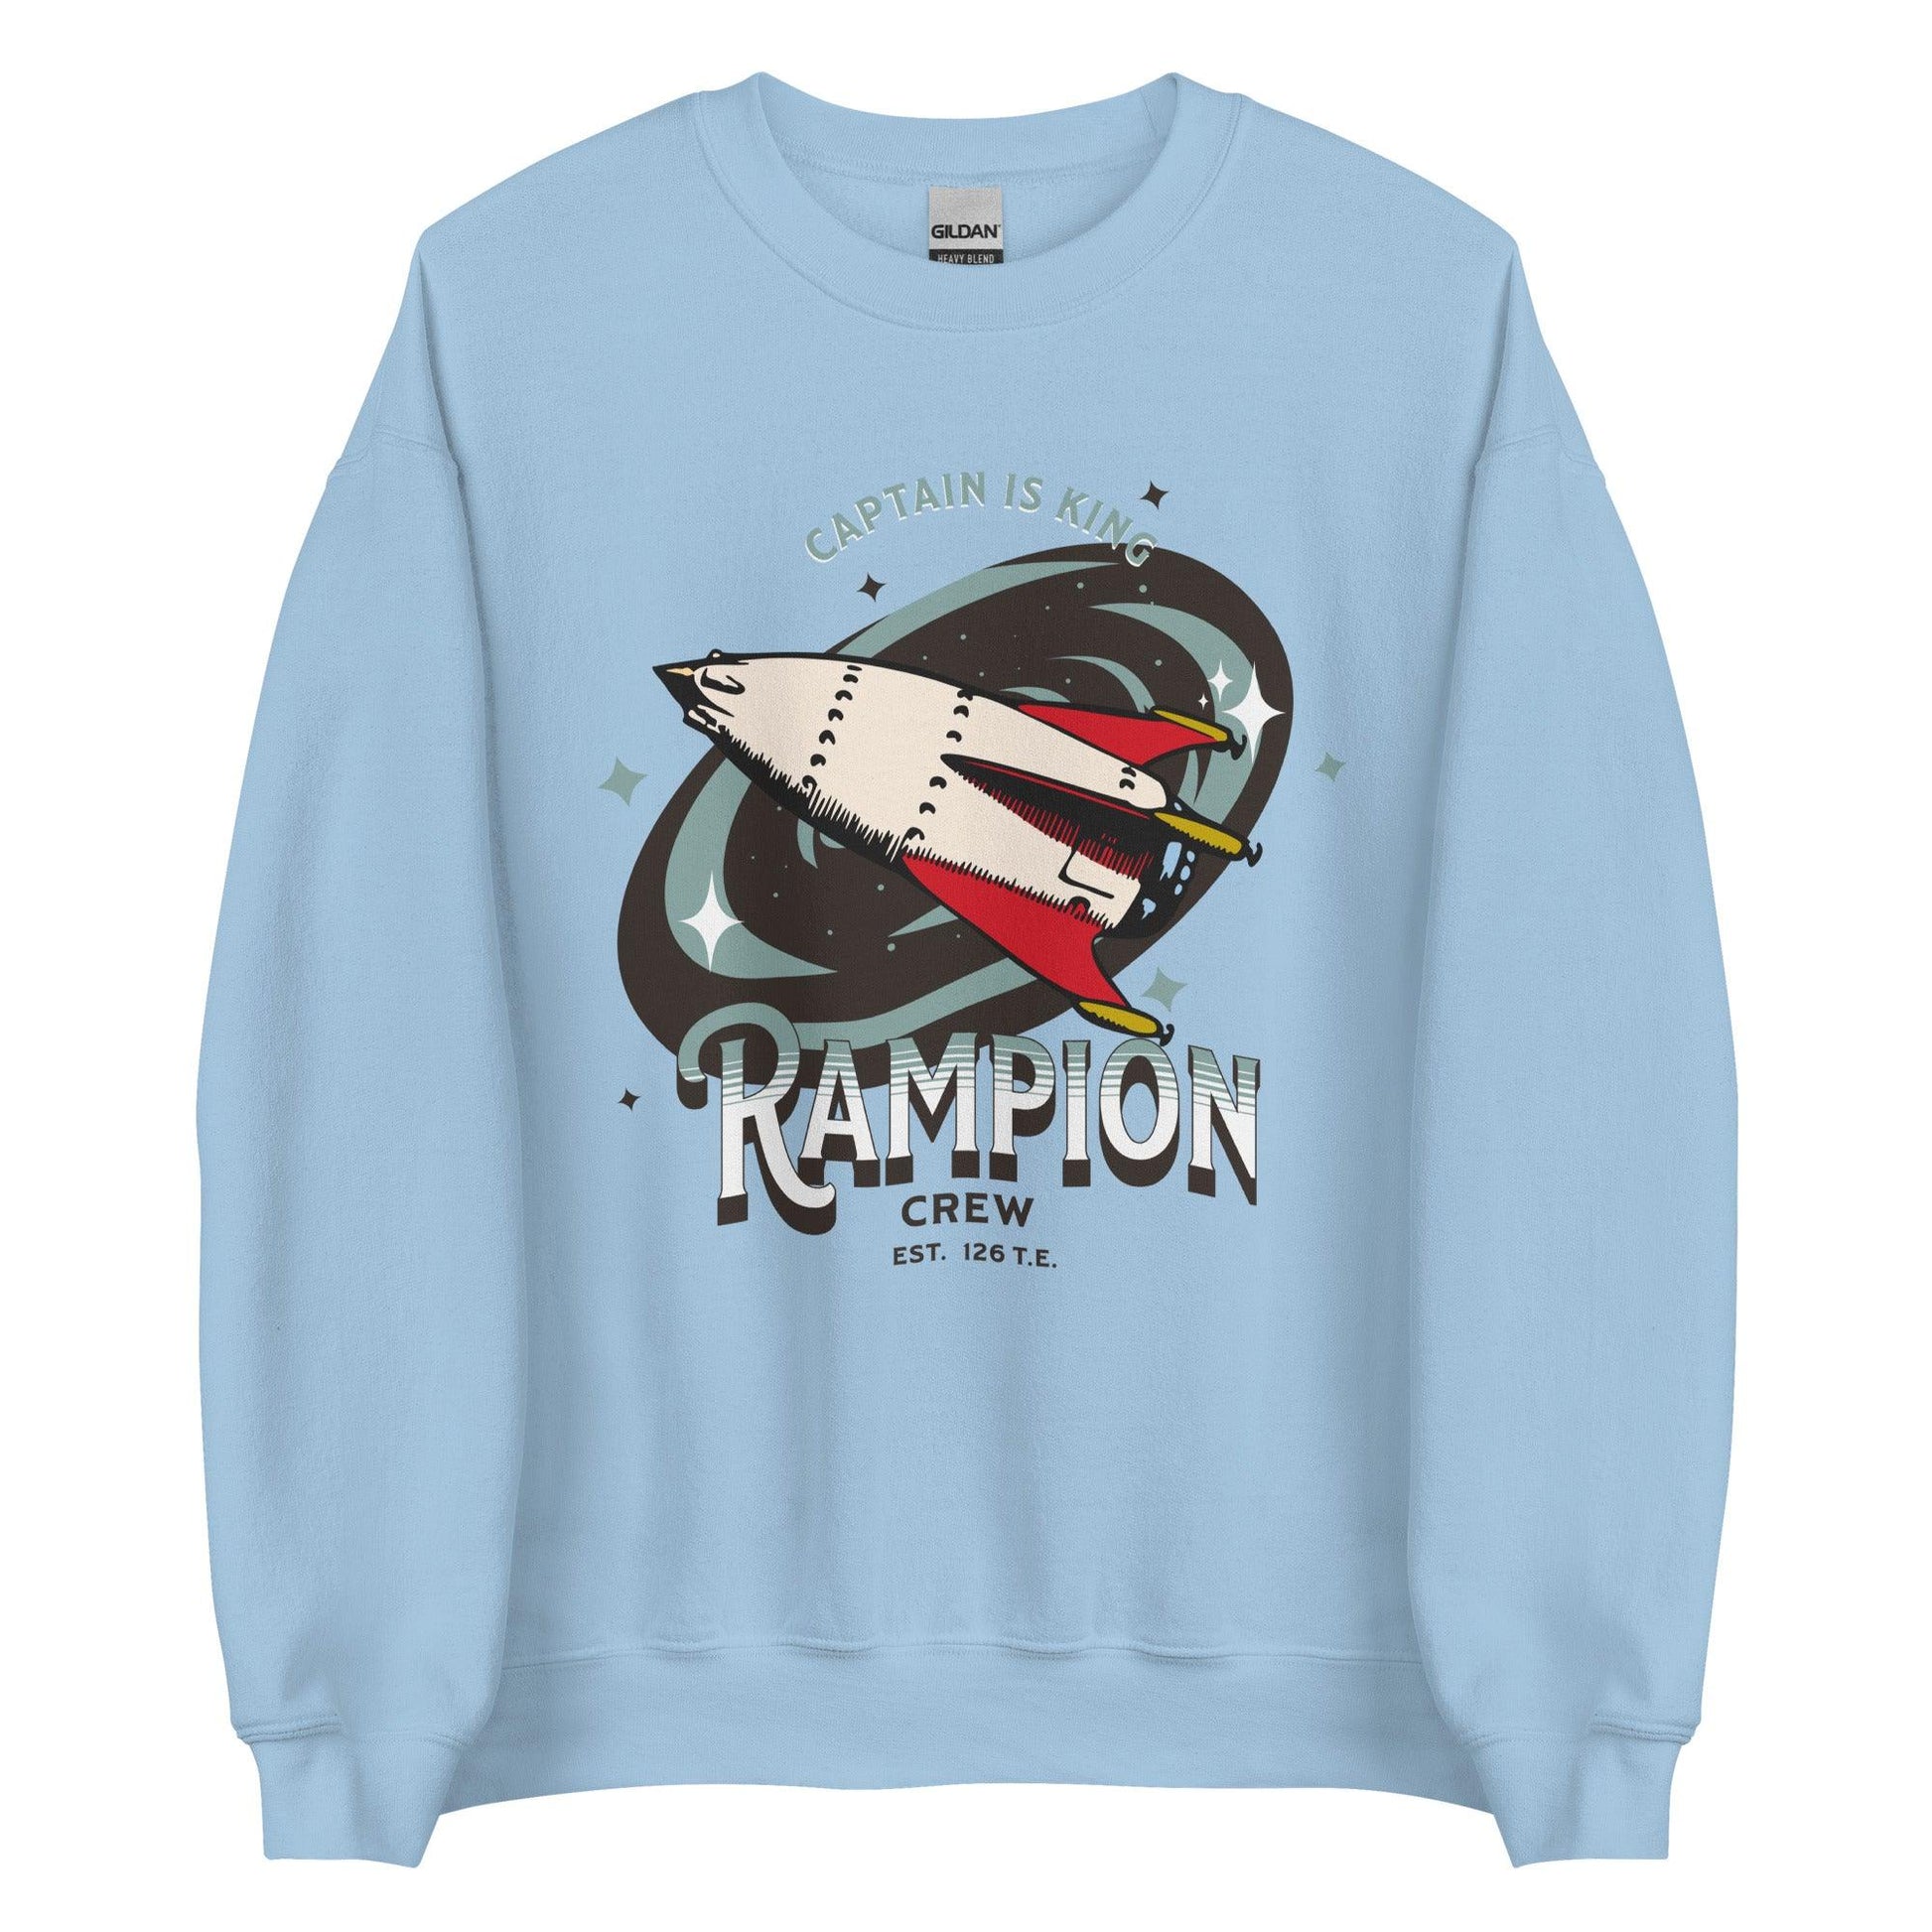 Rampion Crew Sweater - The Bean Workshop - marissa meyer, sweatshirt, tlc